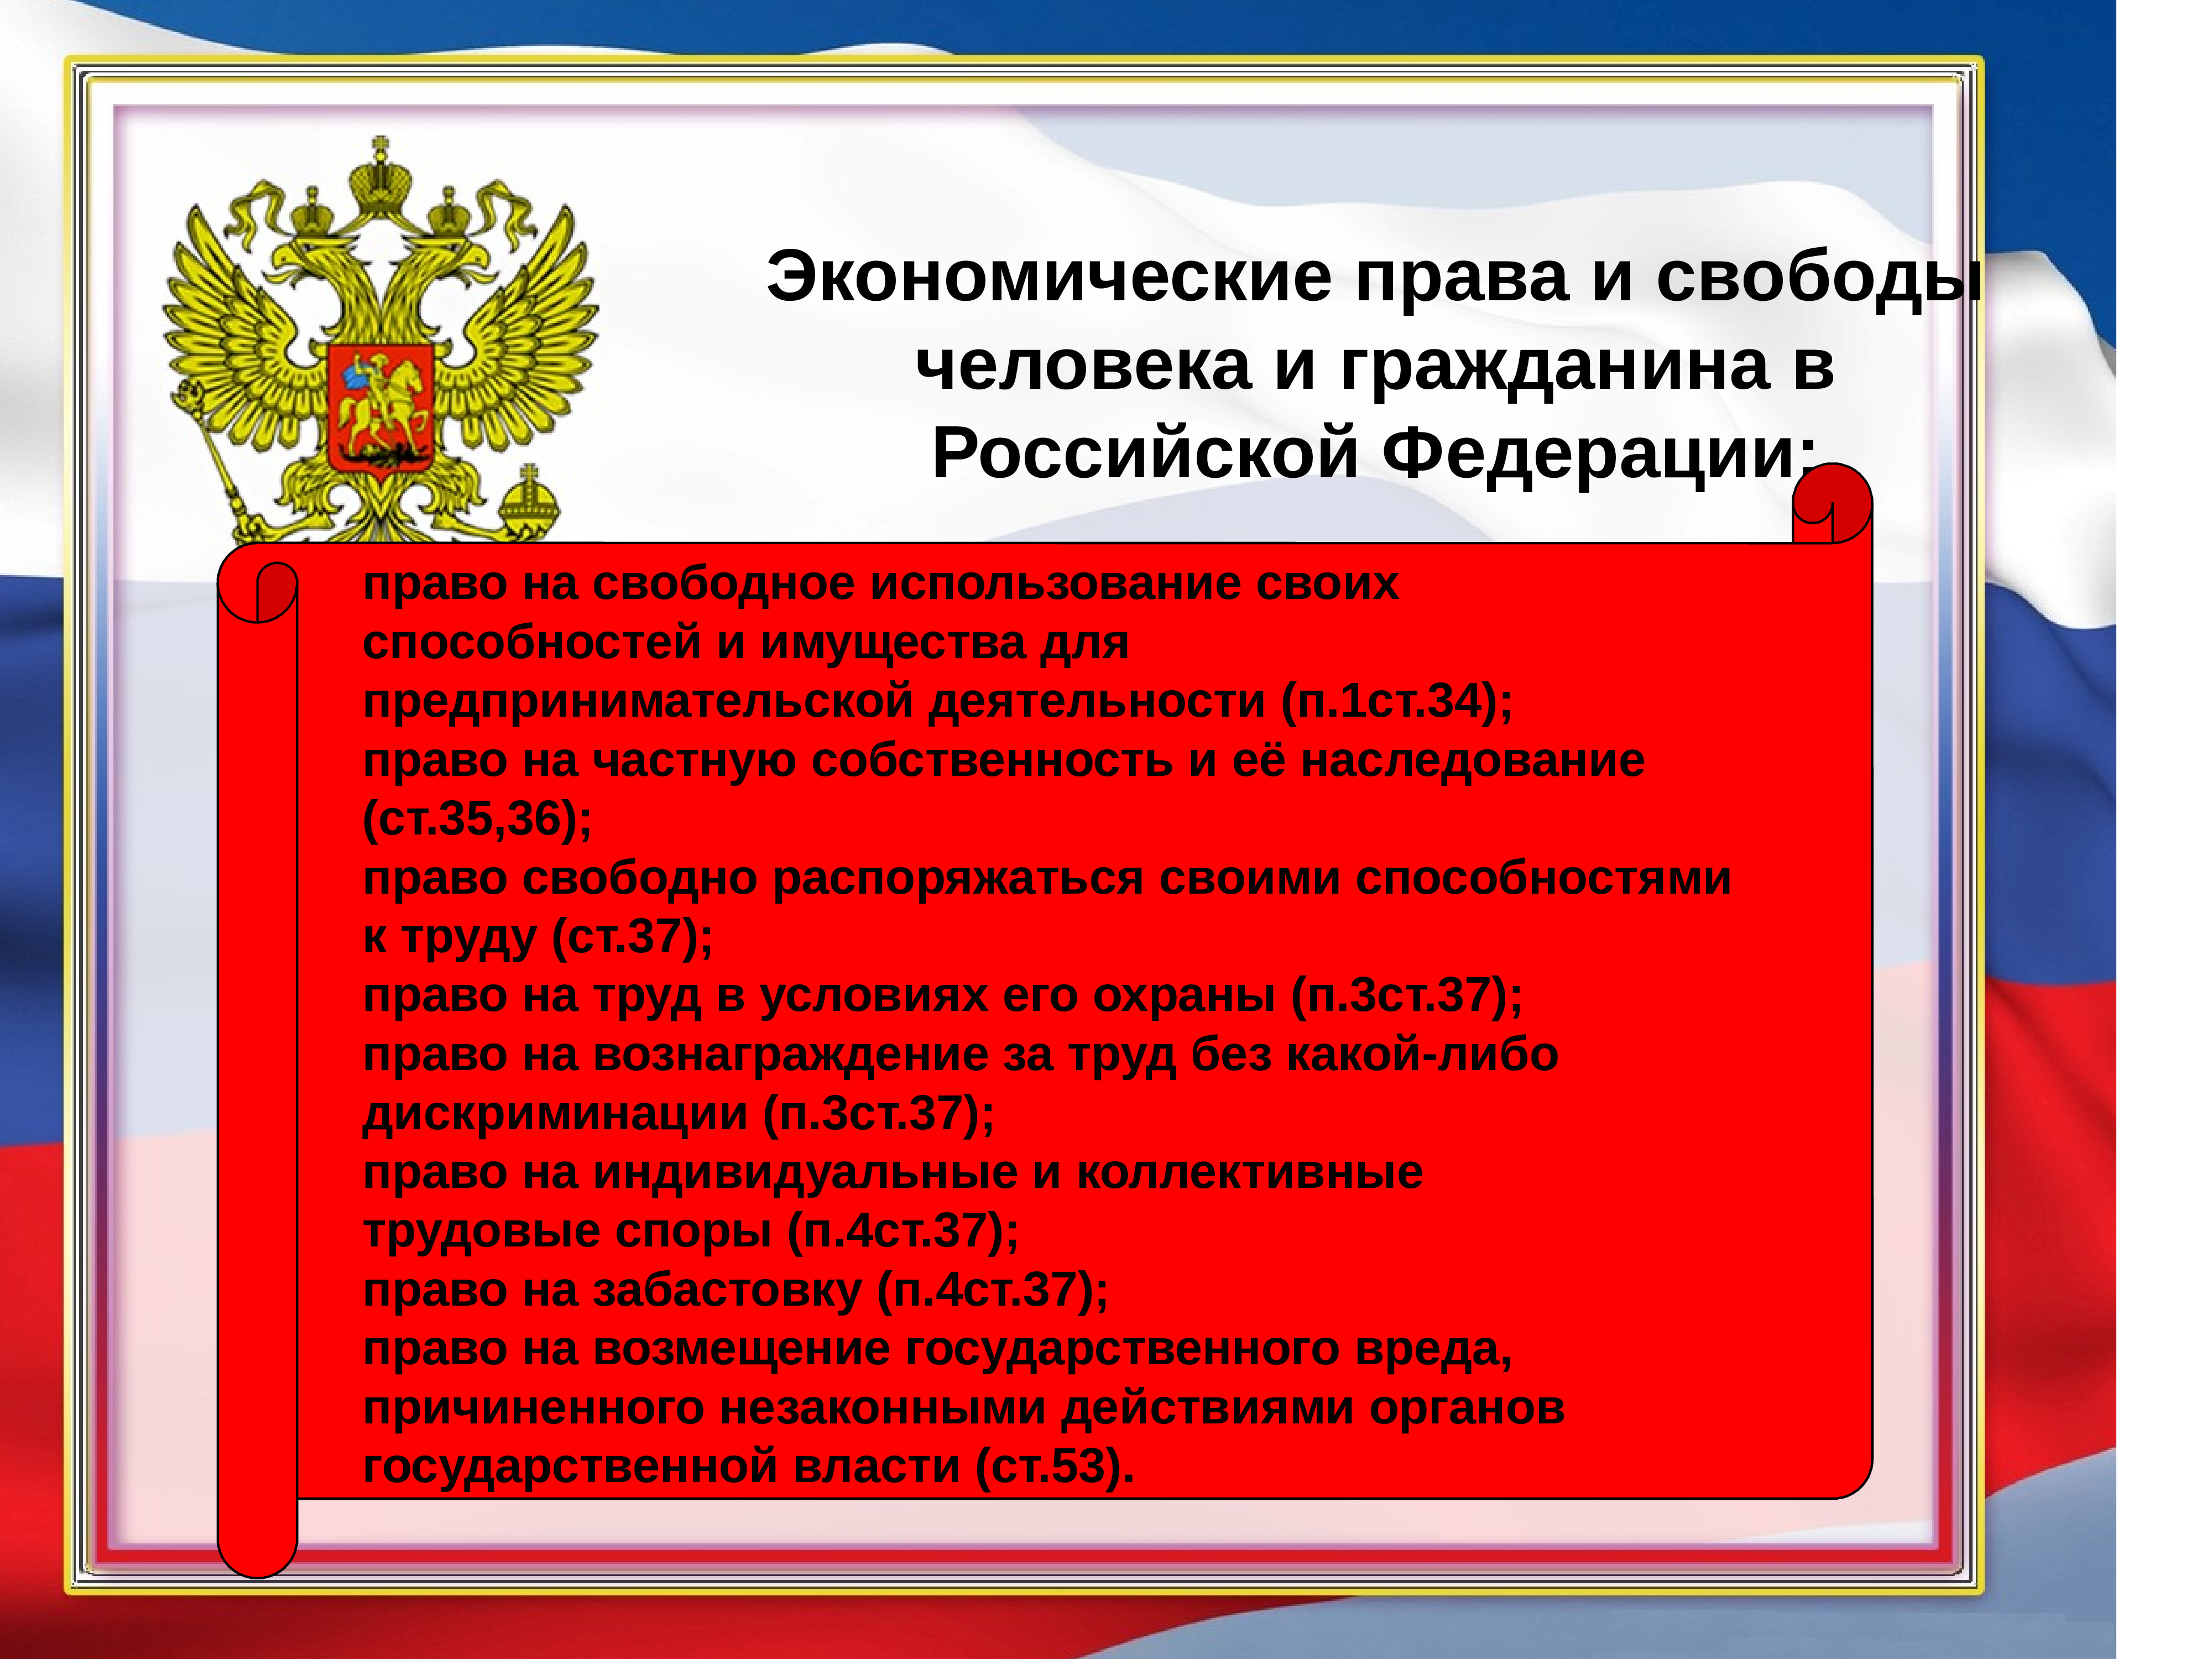 Три примера прав граждан рф. Конституции РФ прав и свобод и гражданина.